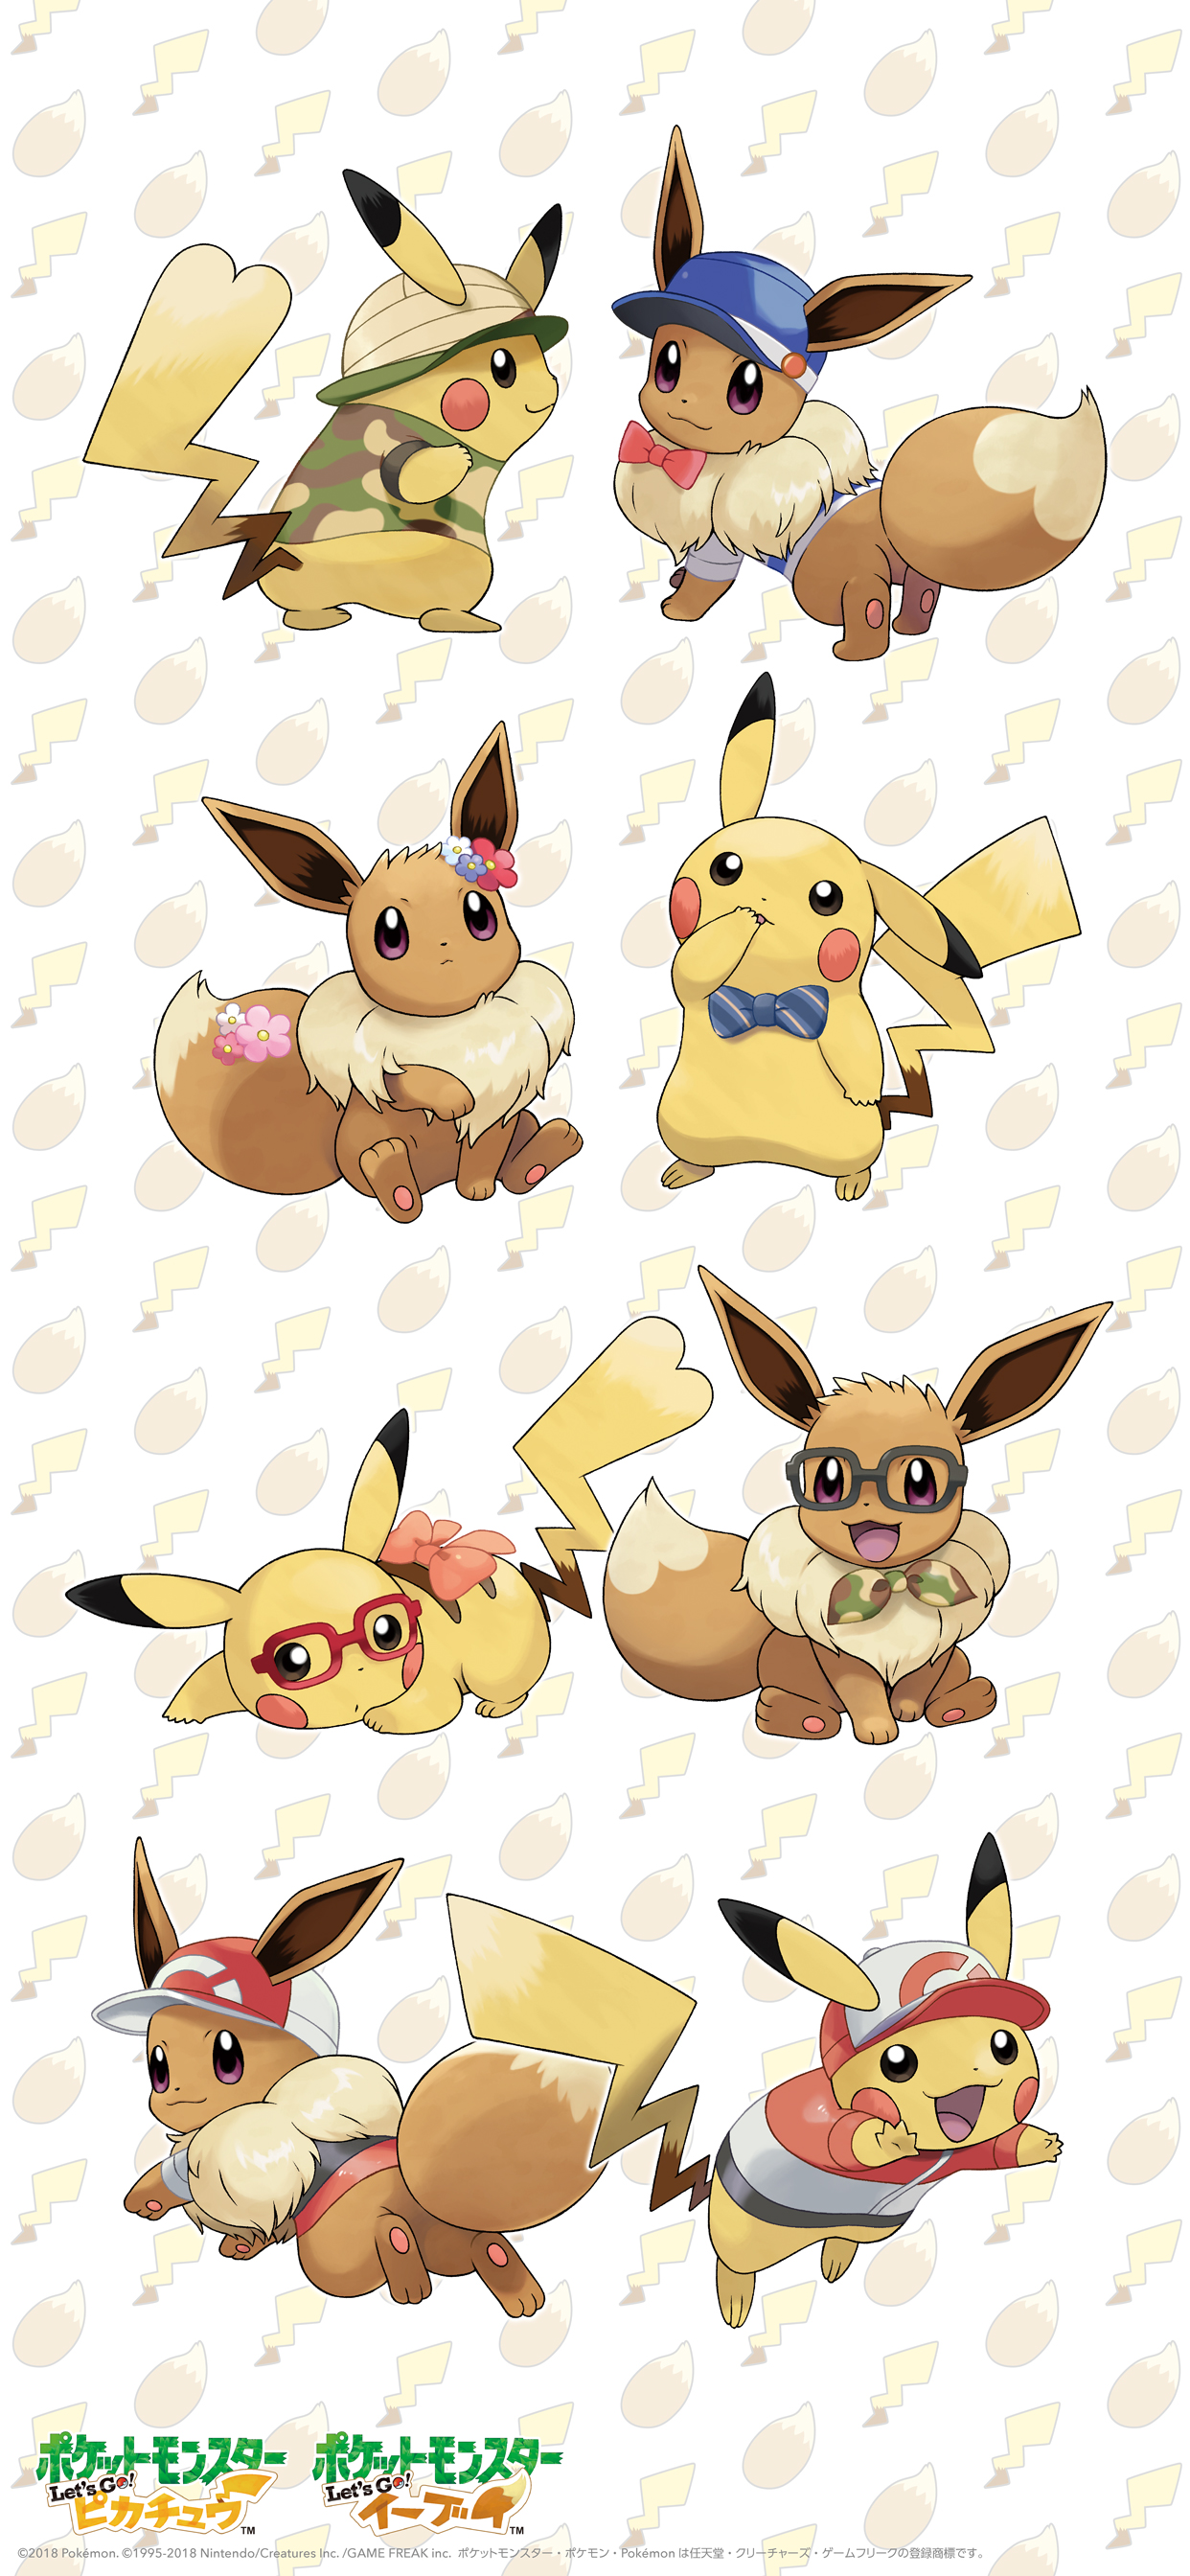 Download This Pokemon Let's Go Pikachu Eevee Wallpaper